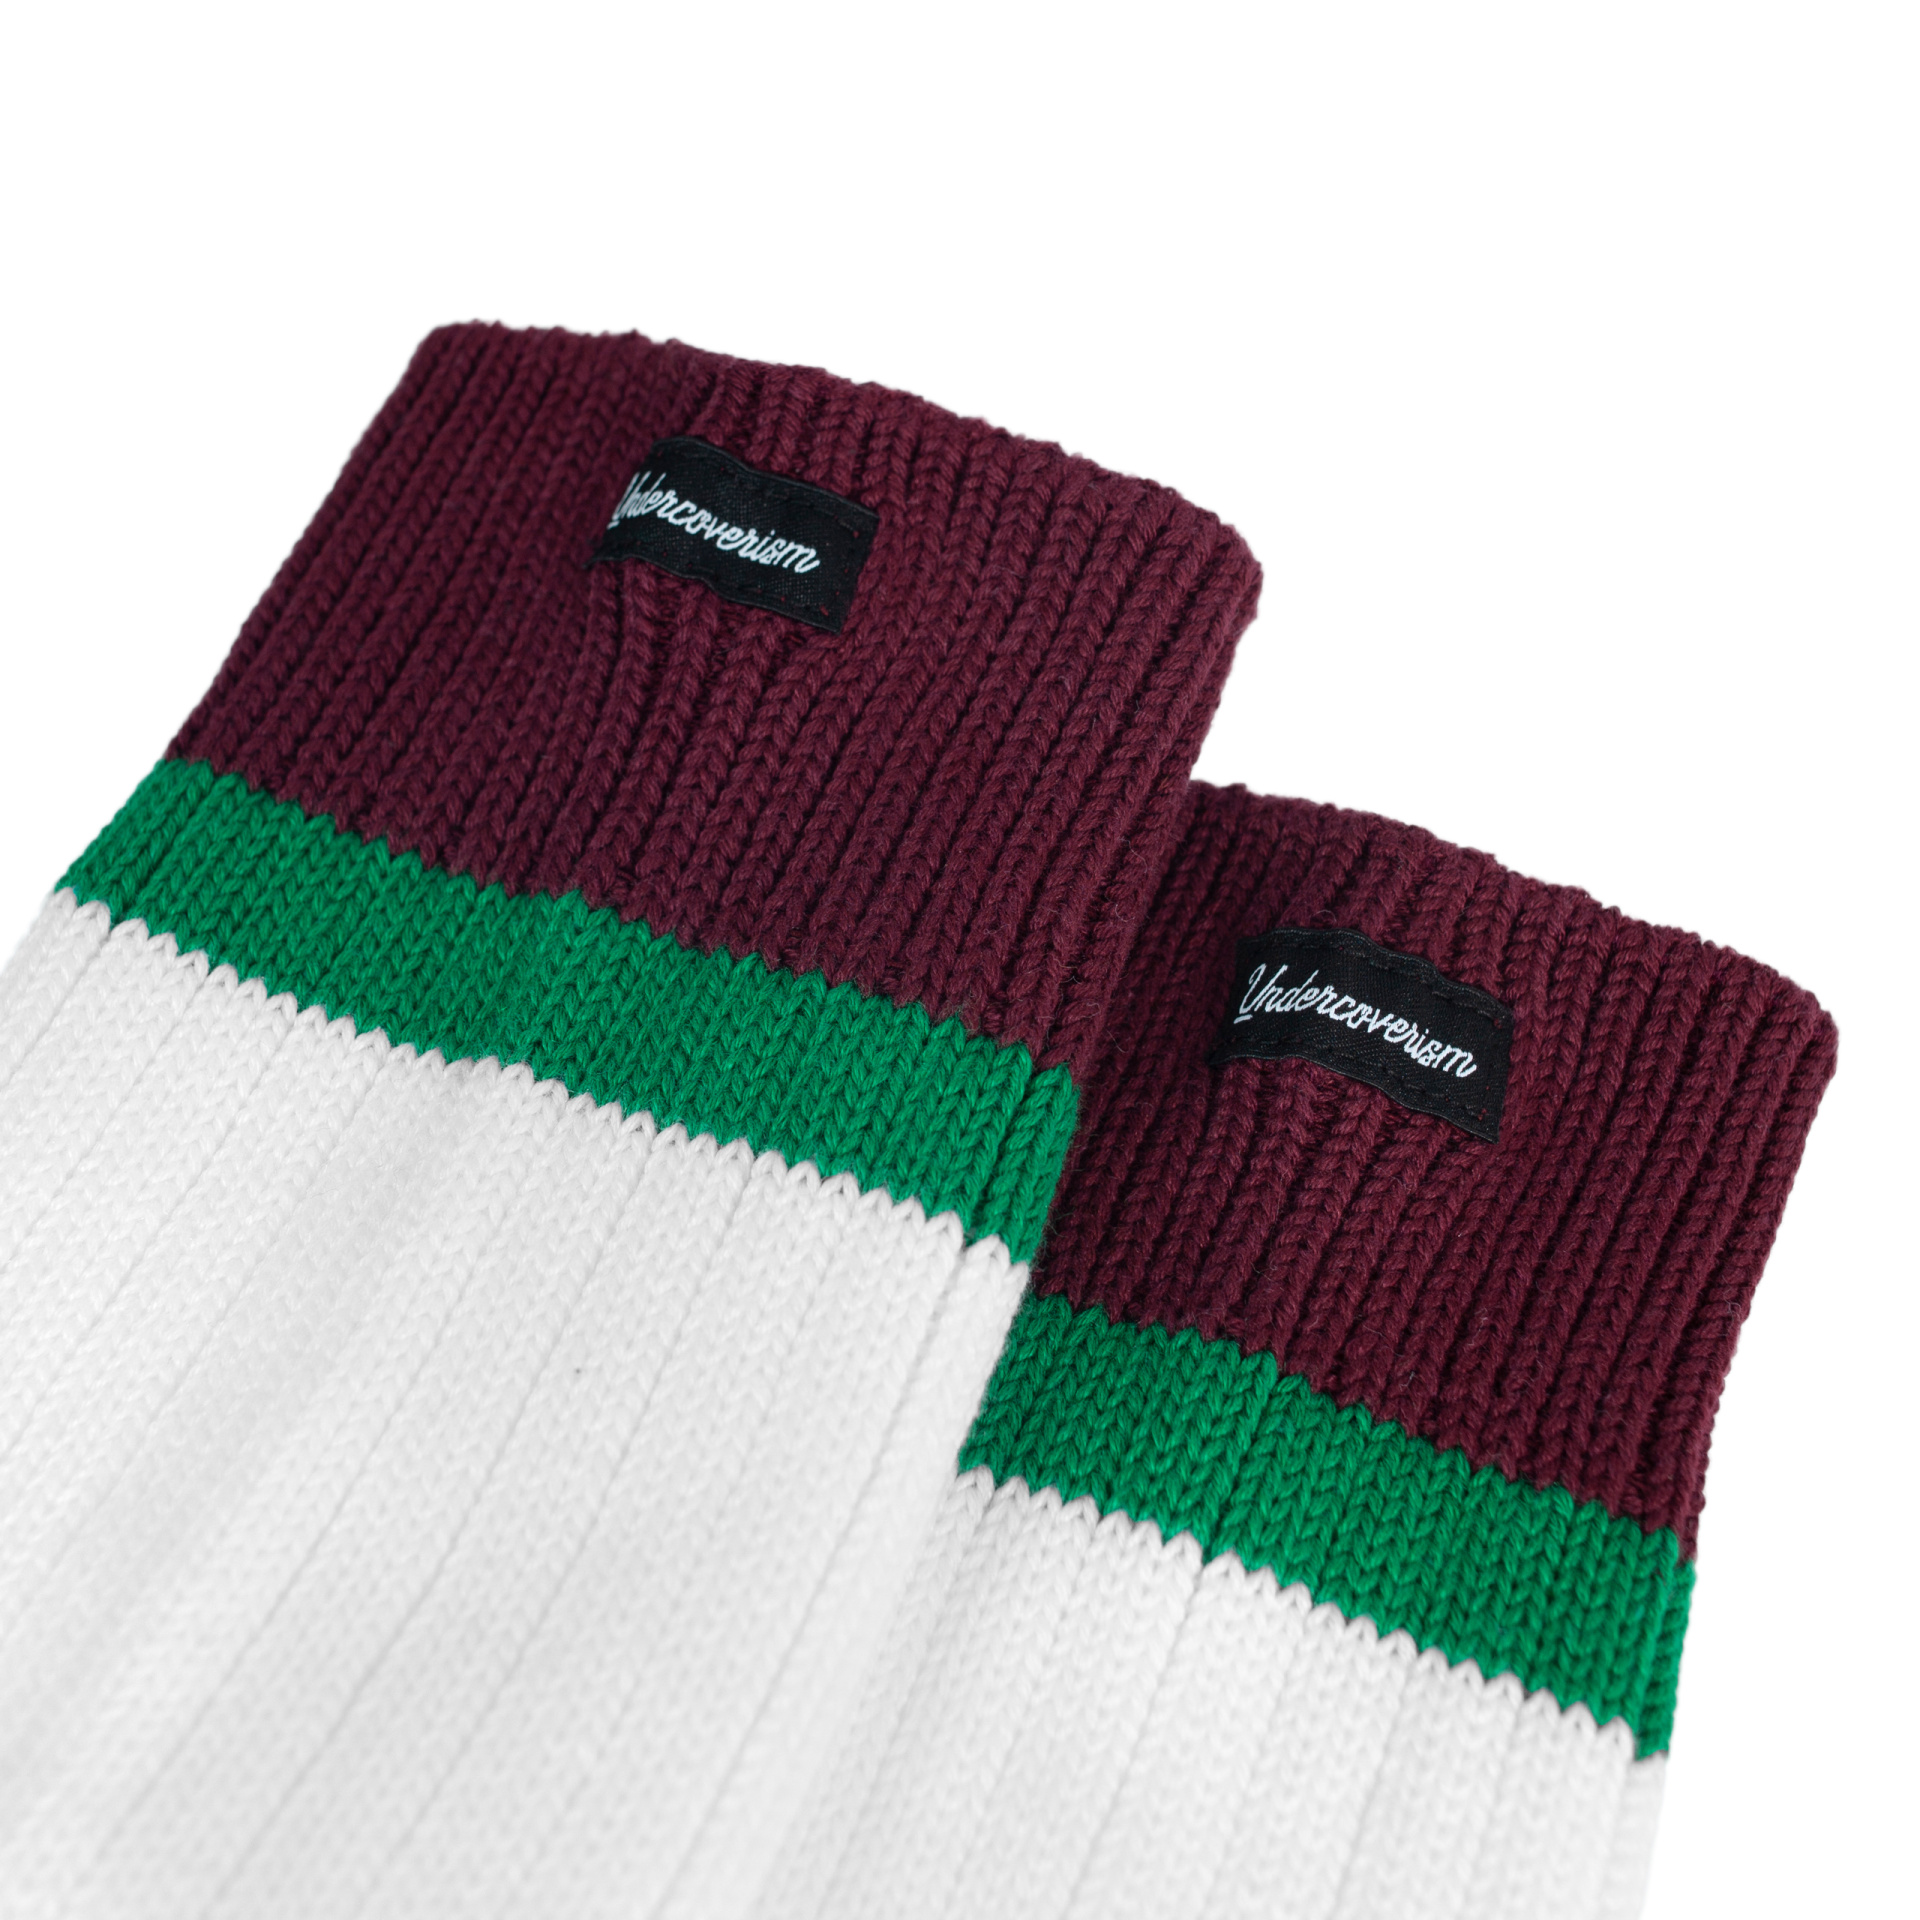 Undercover White calf-high knit socks